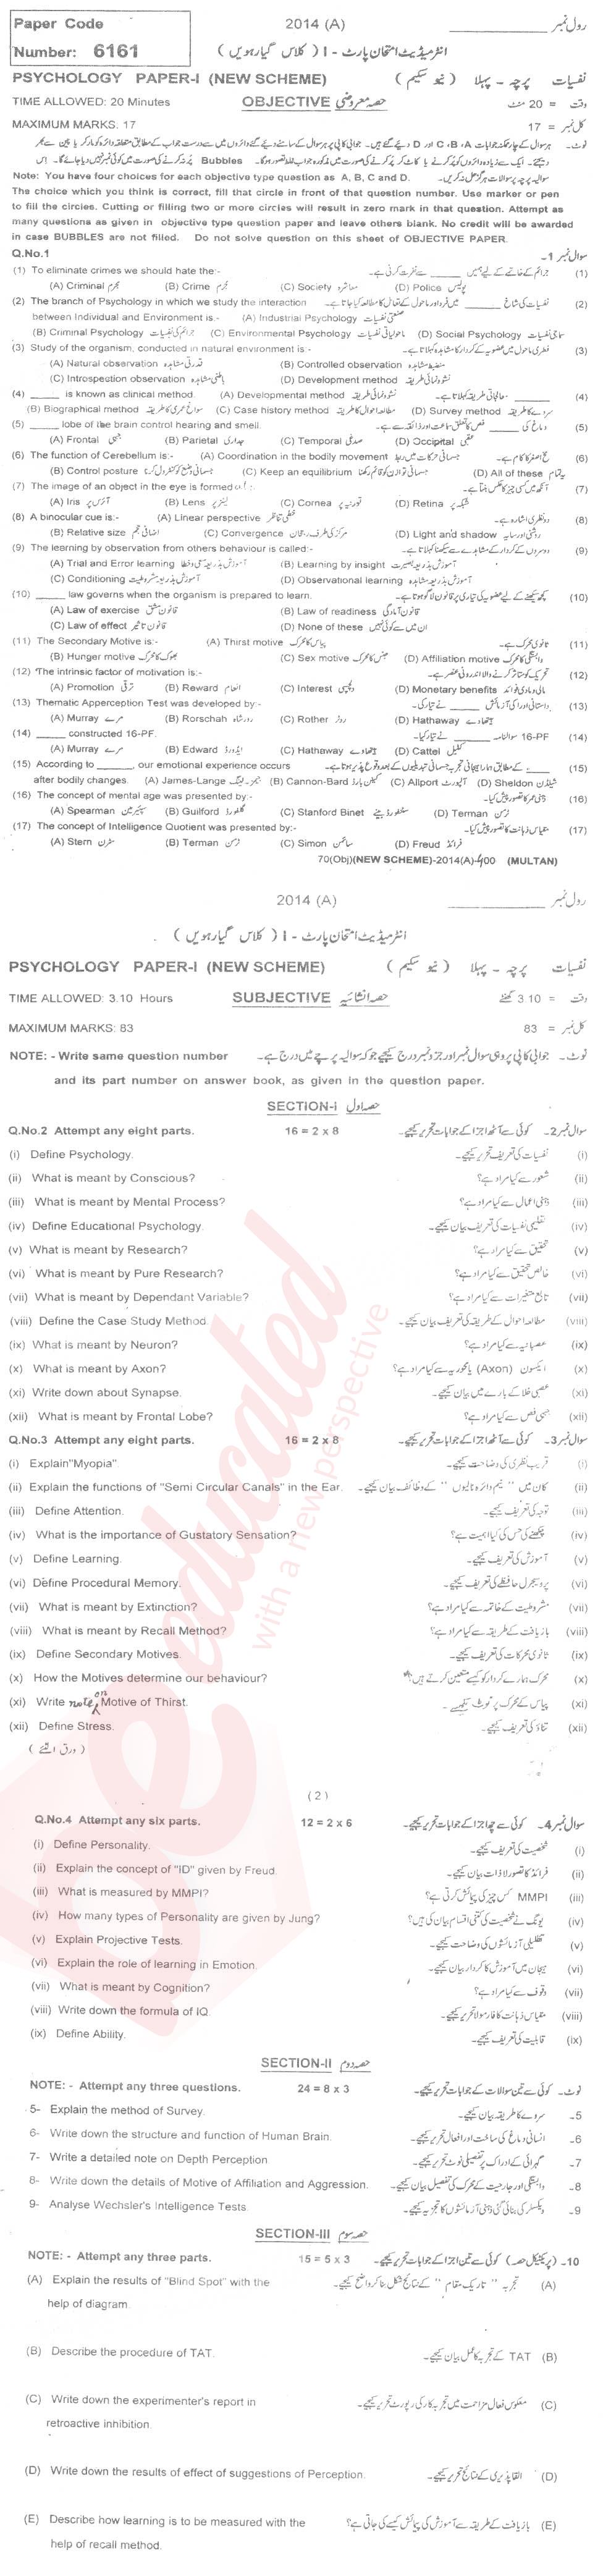 Psychology FA Part 1 Past Paper Group 1 BISE Multan 2014